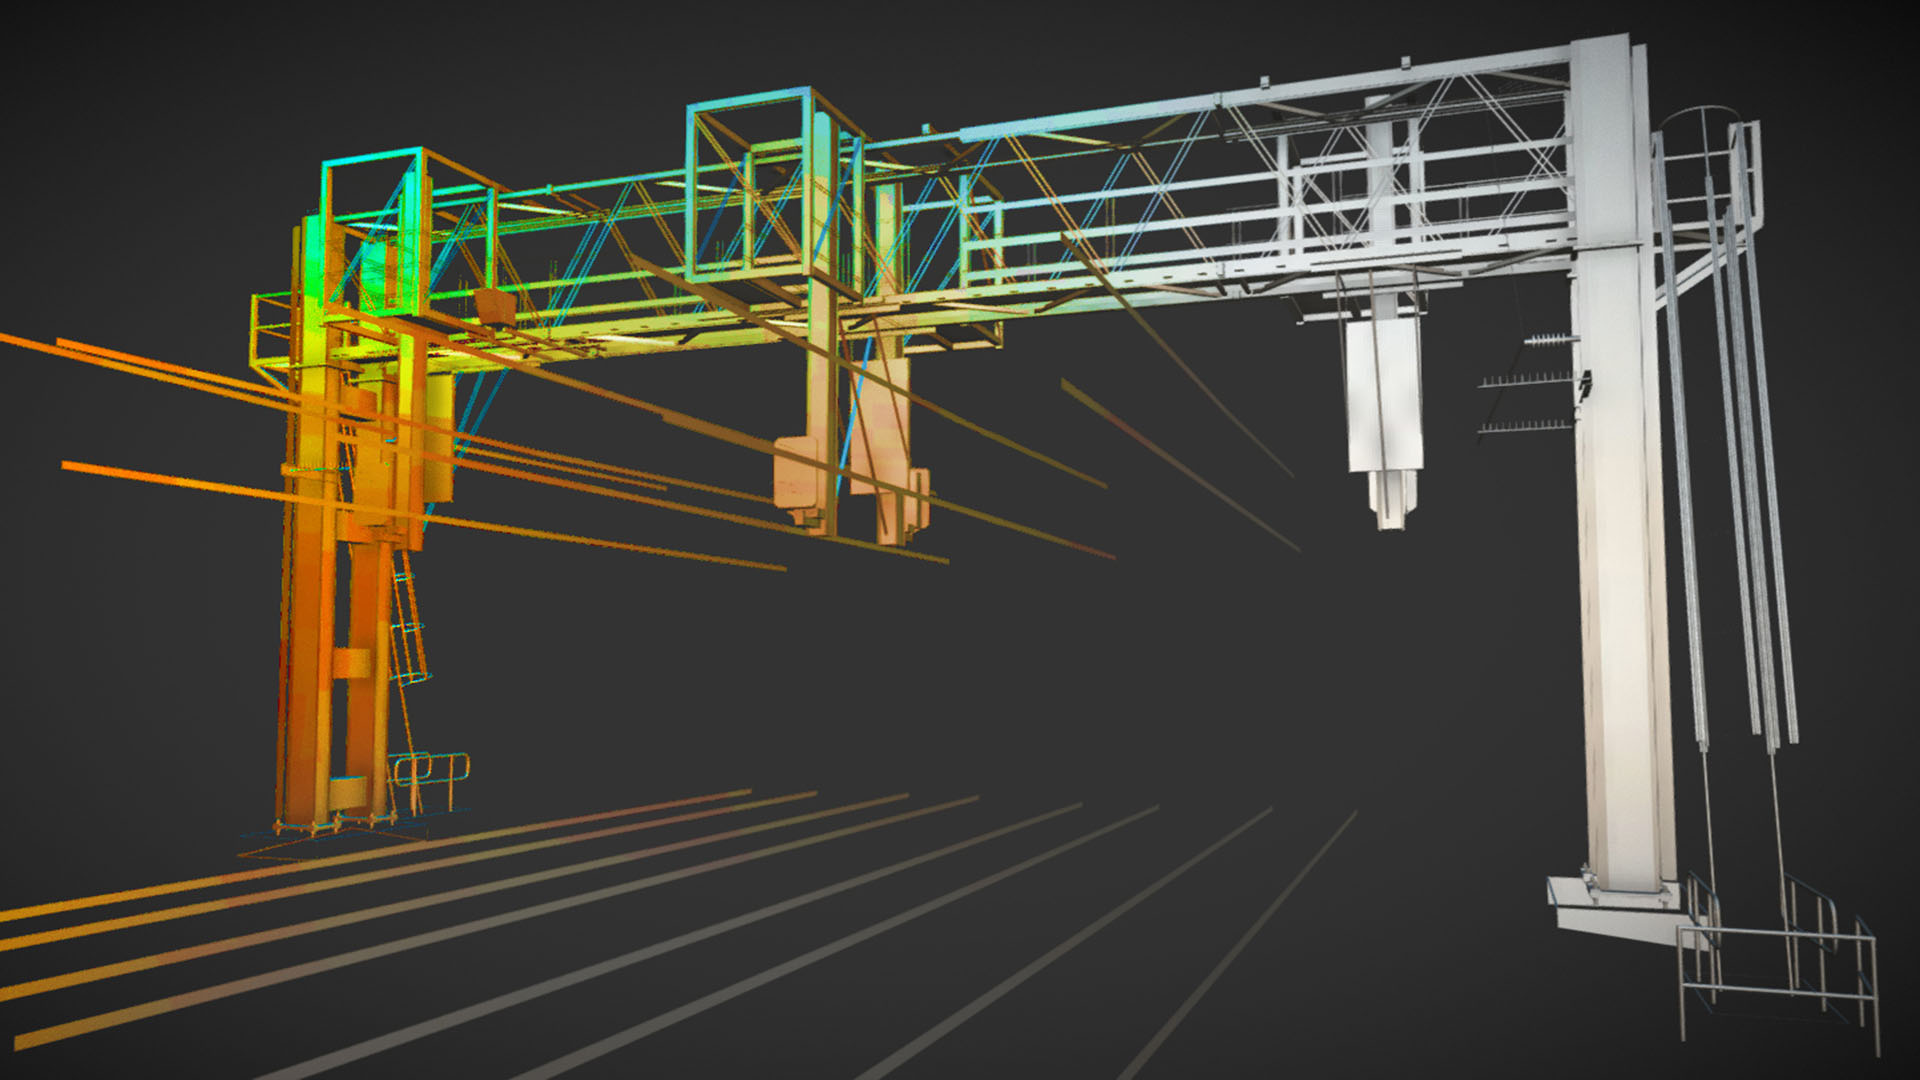 3D CAD model of a railway signal gantry